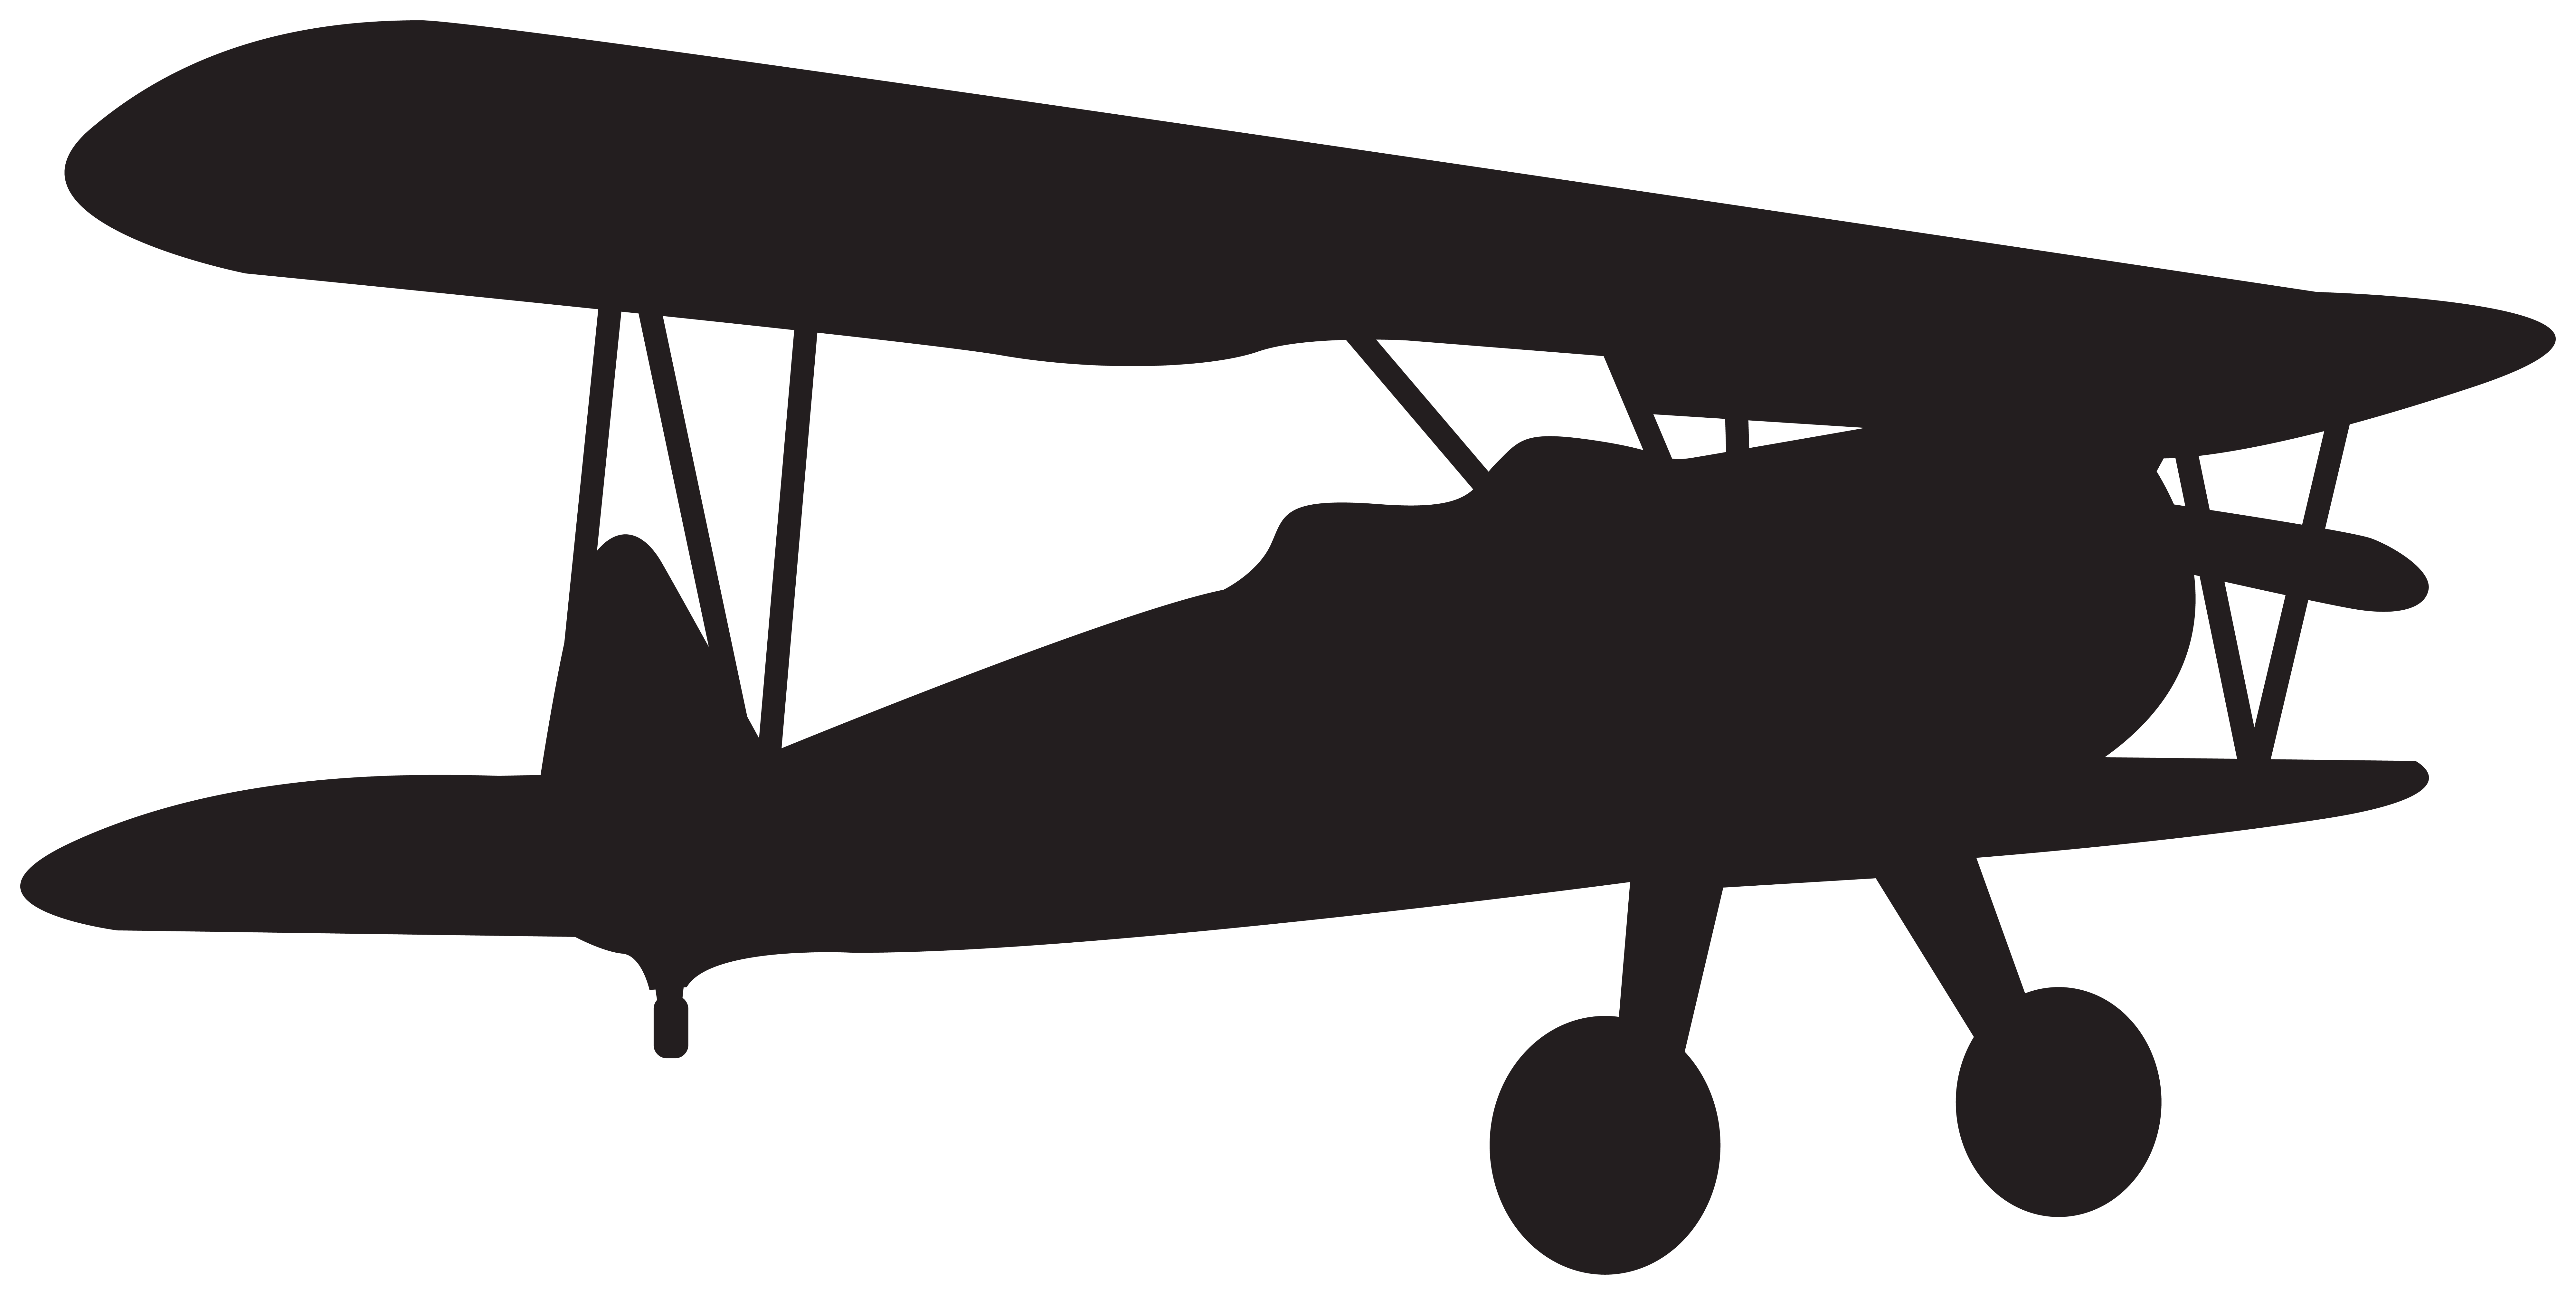 Small Plane Silhouette Clip Art Image